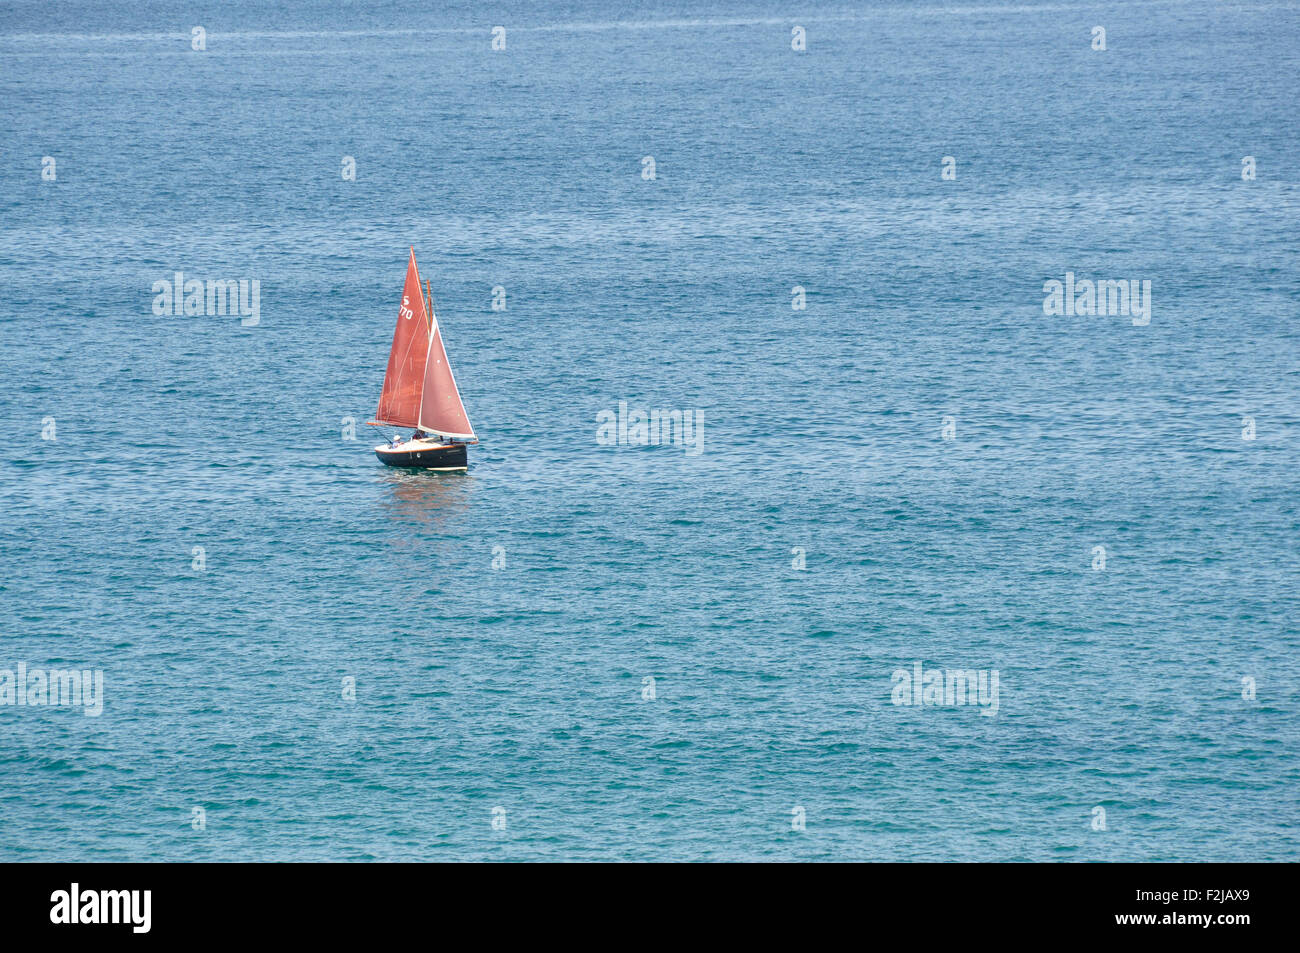 Rote Segel auf einem blauen Meer - ein Segelschiff - rote Segel - allein auf einem tiefblauen Meer - Sonne - ruhiger See Stockfoto